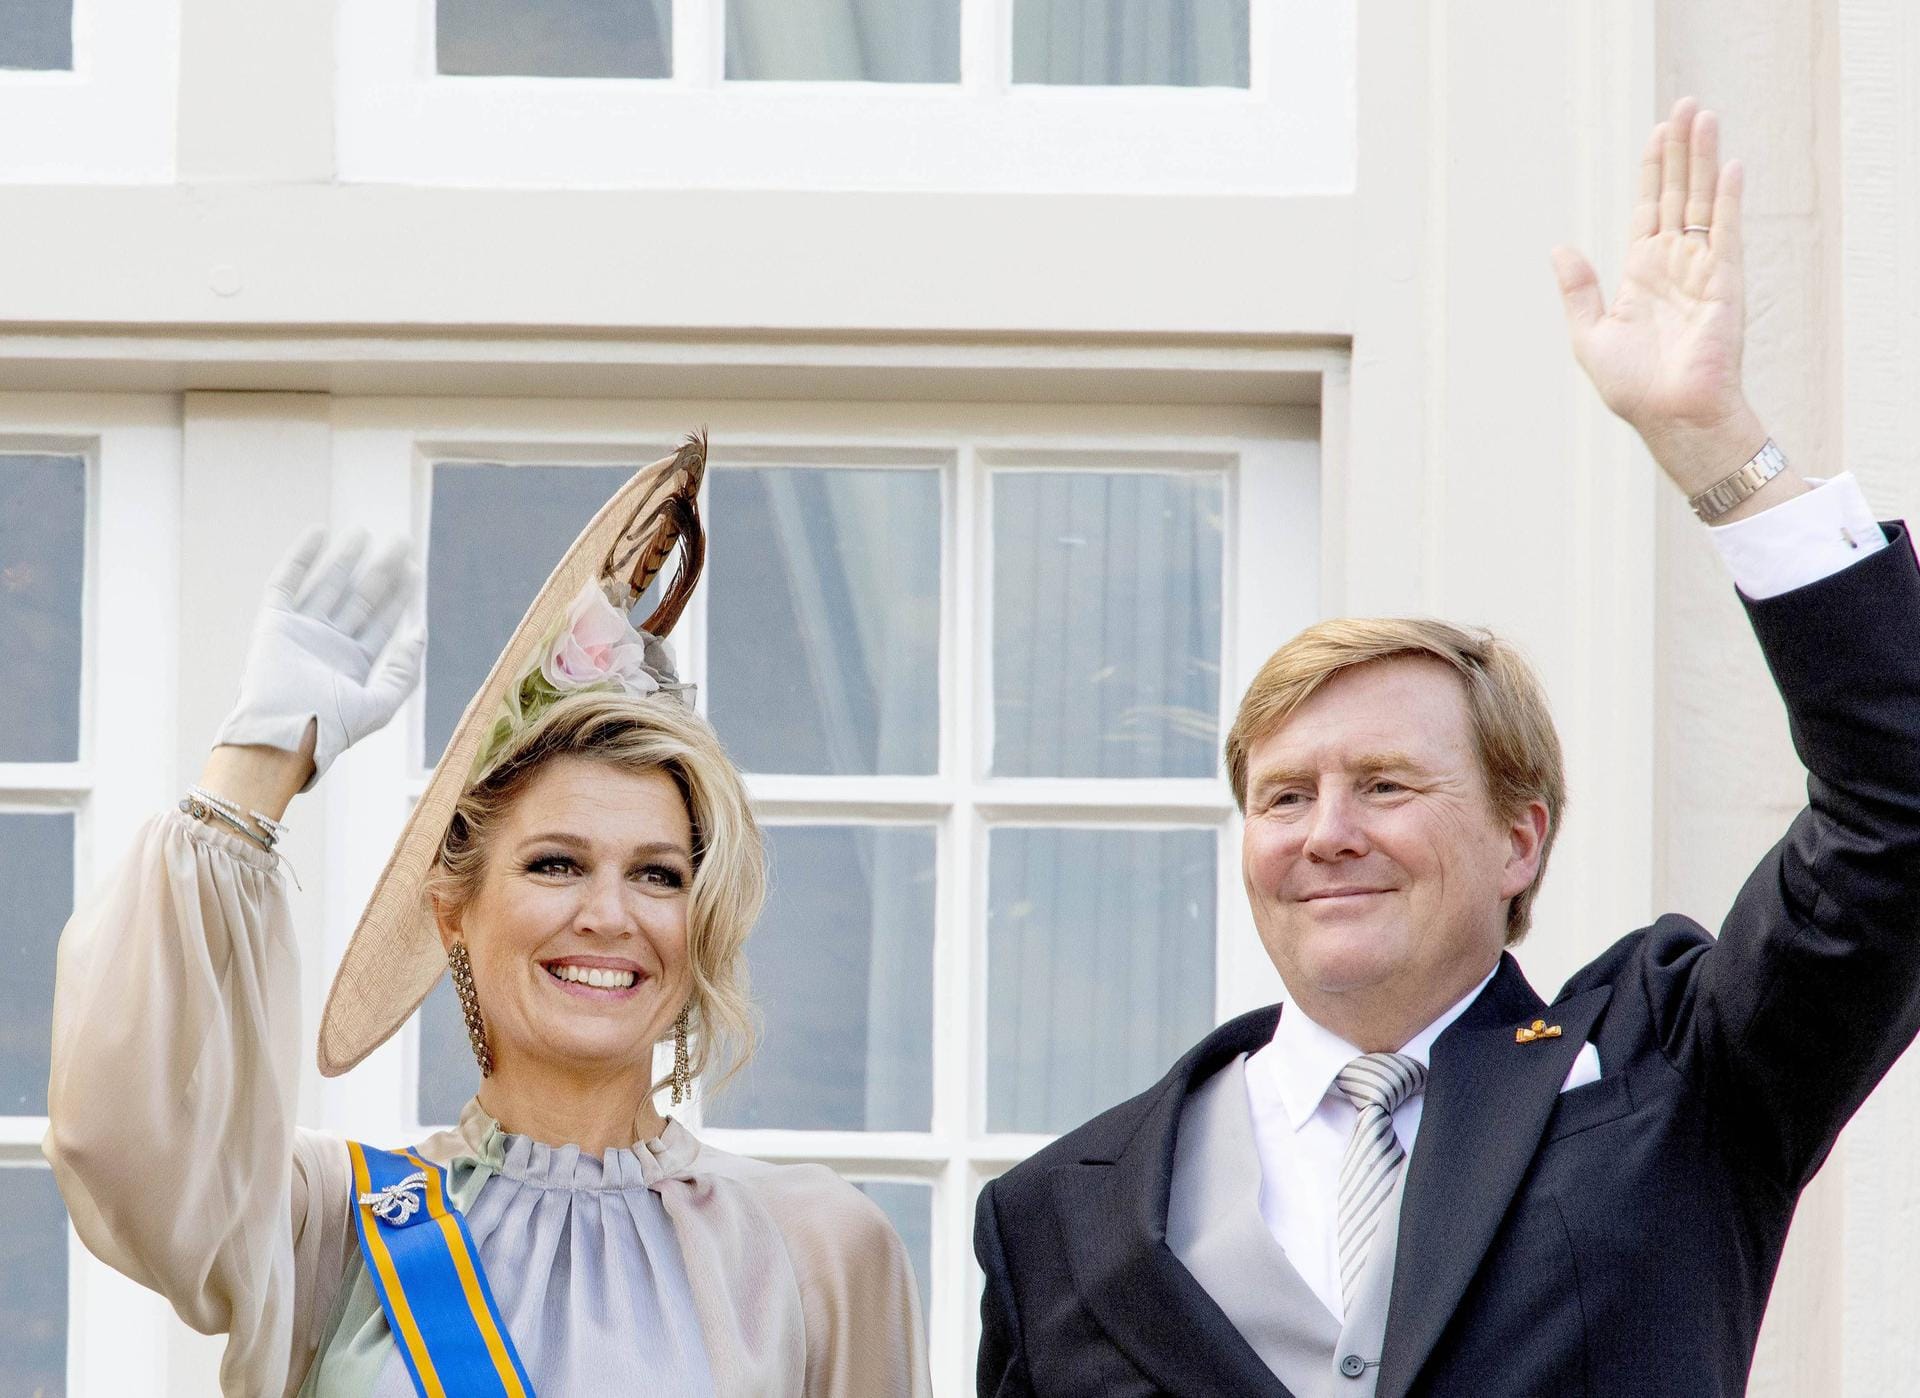 Glückliches Königspaar: Màxima und Willem Alexander werden vom Volk gefeiert und grüßen fröhlich vom Balkon des Palastes.